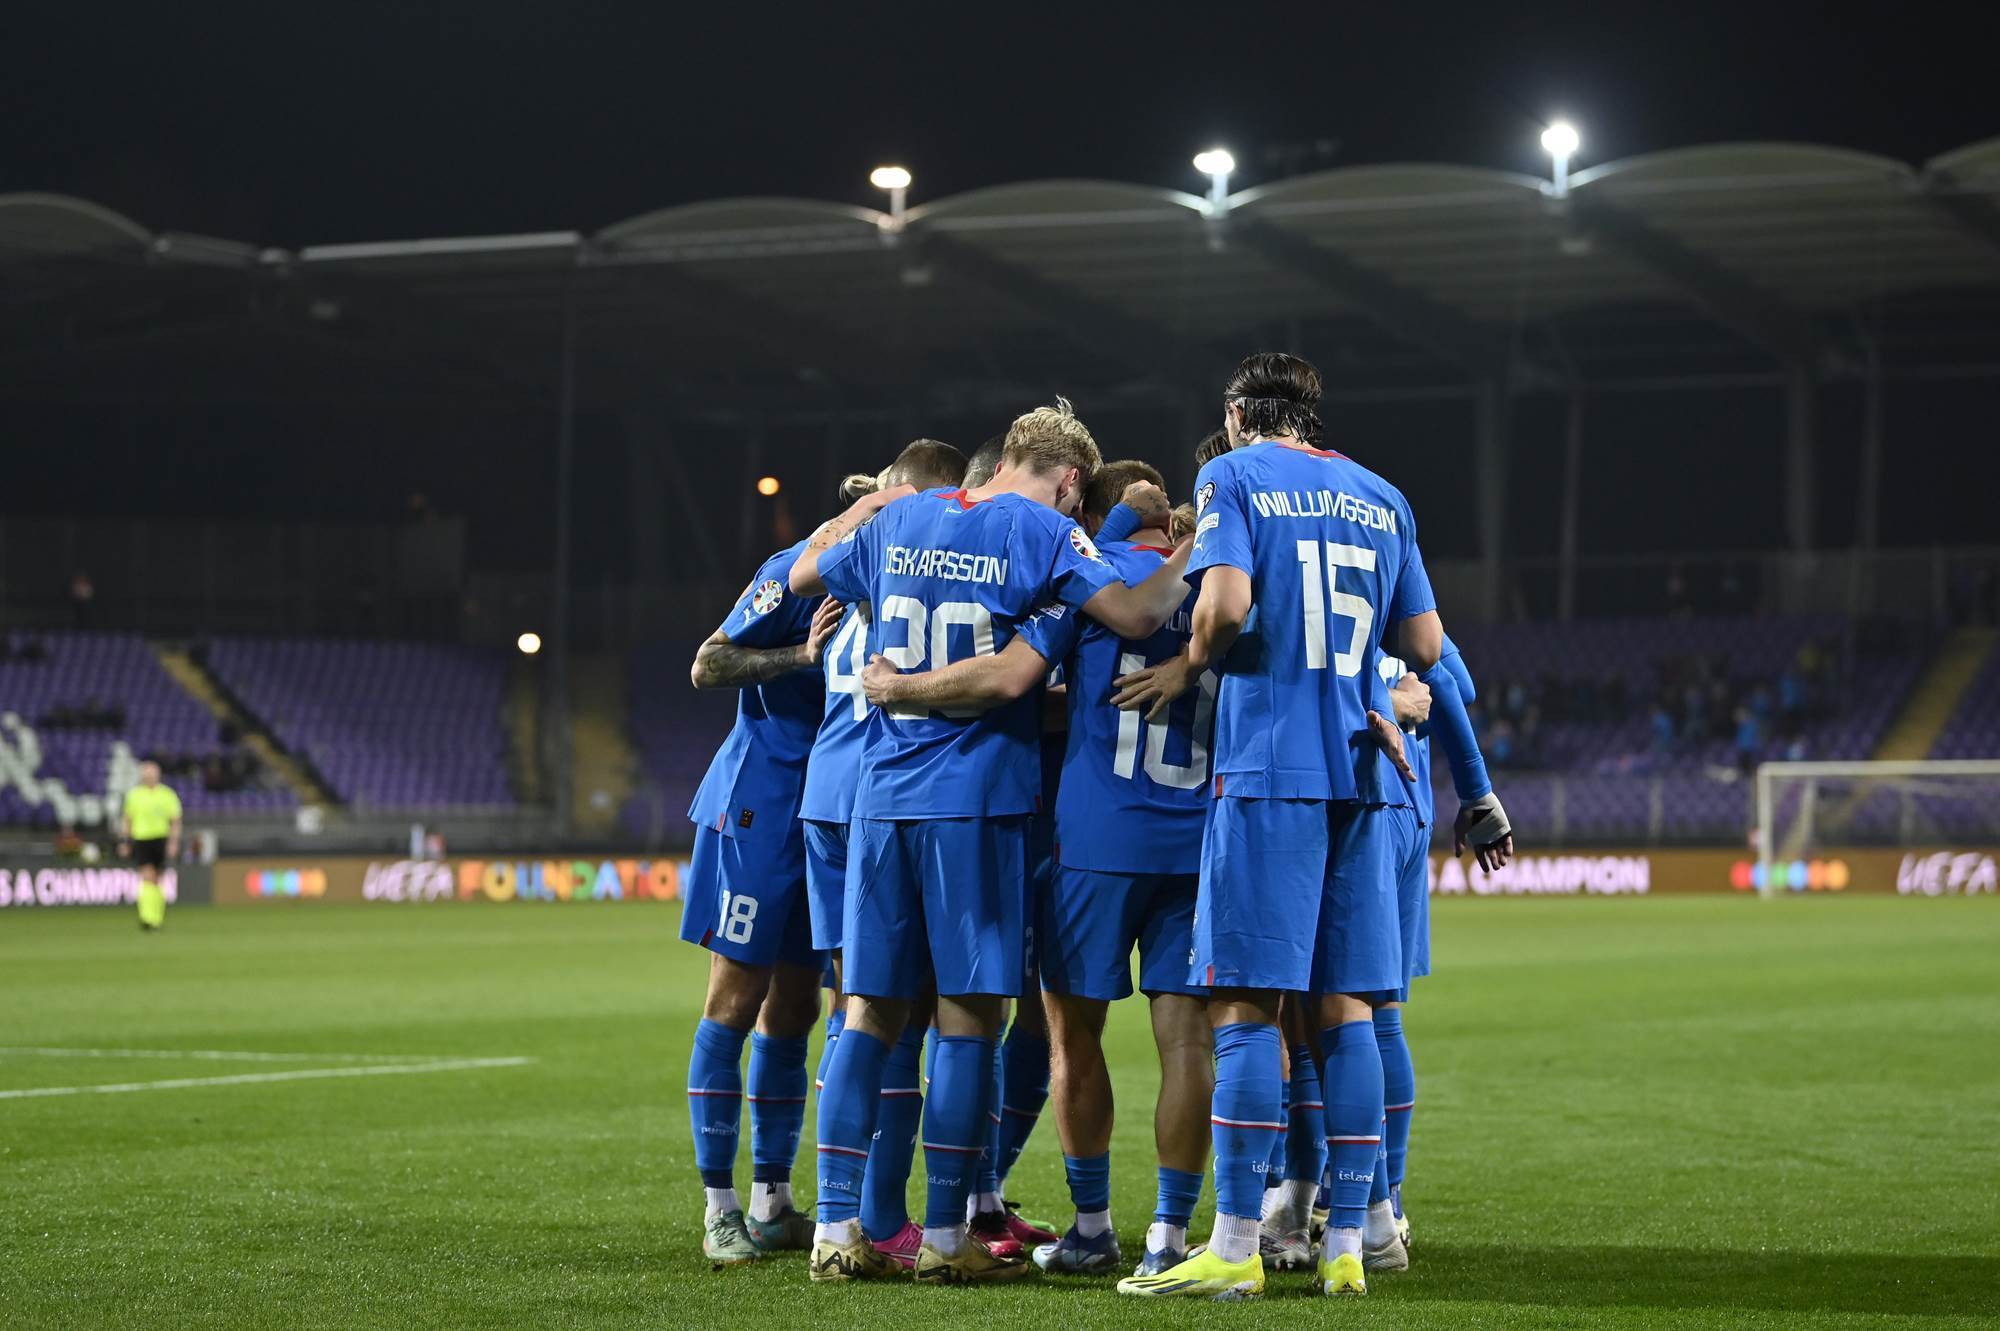 "Може бути на нашу користь": тренер Ісландії висловився про матч з Україною